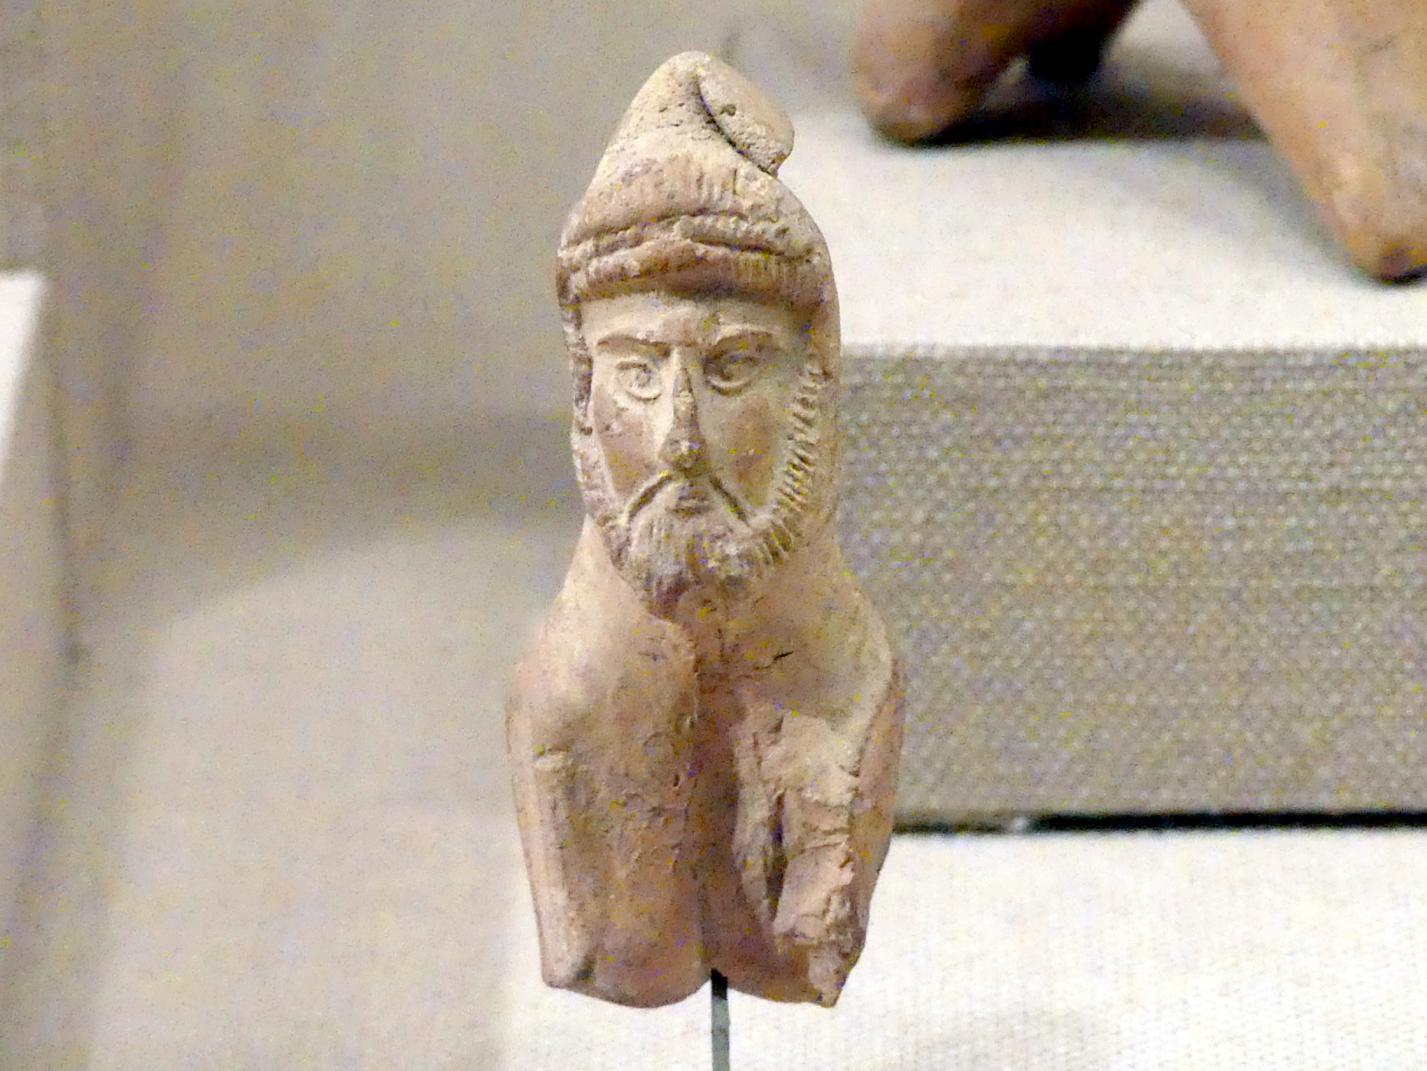 Figur eines Reiters, Altpersisches Reich, 600 - 300 v. Chr., 500 - 300 v. Chr.